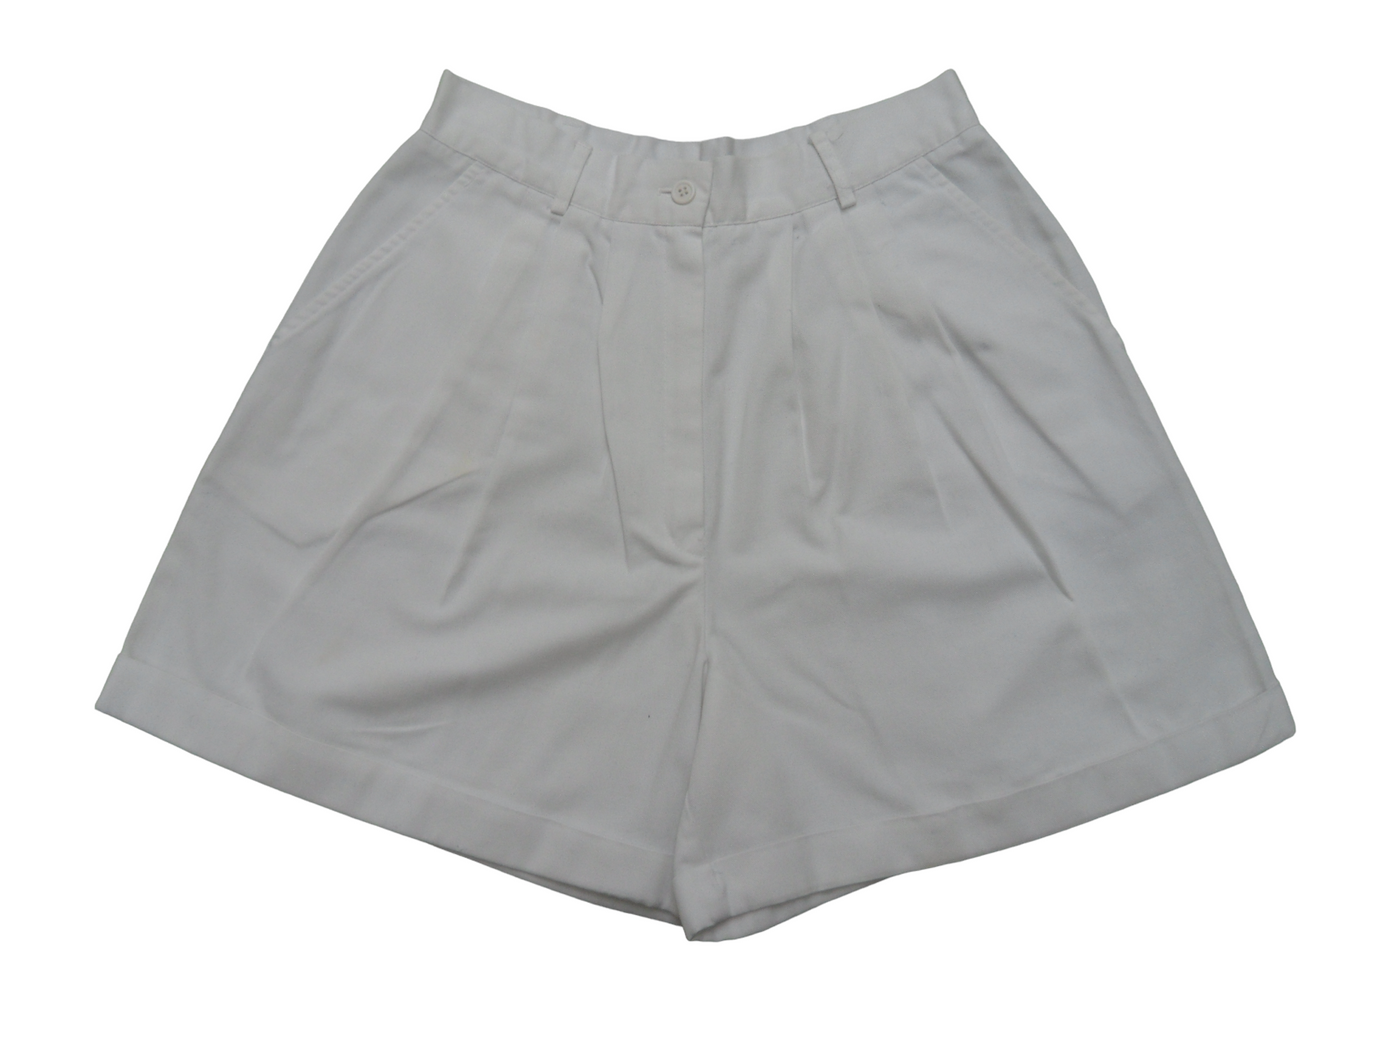 Vintage Counterparts Petite White Cotton Women's ShortsVintage Counterparts Petite White Cotton Women's Shorts